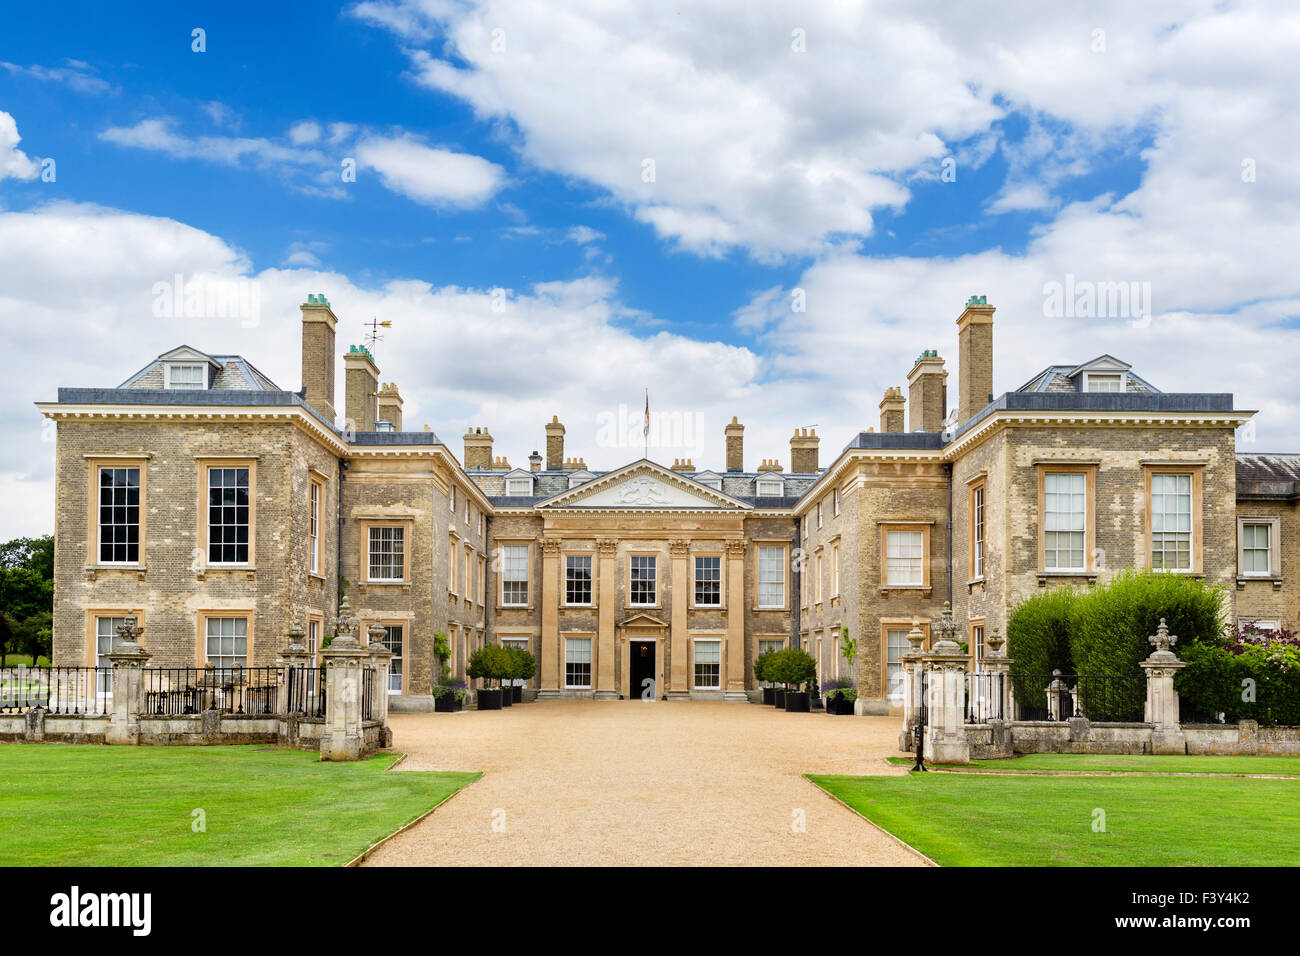 Die Vorderseite des Althorp House, Sitz der Earl Spencer und Kindheit Zuhause von Diana Princess of Wales, Northamptonshire, England, UK Stockfoto